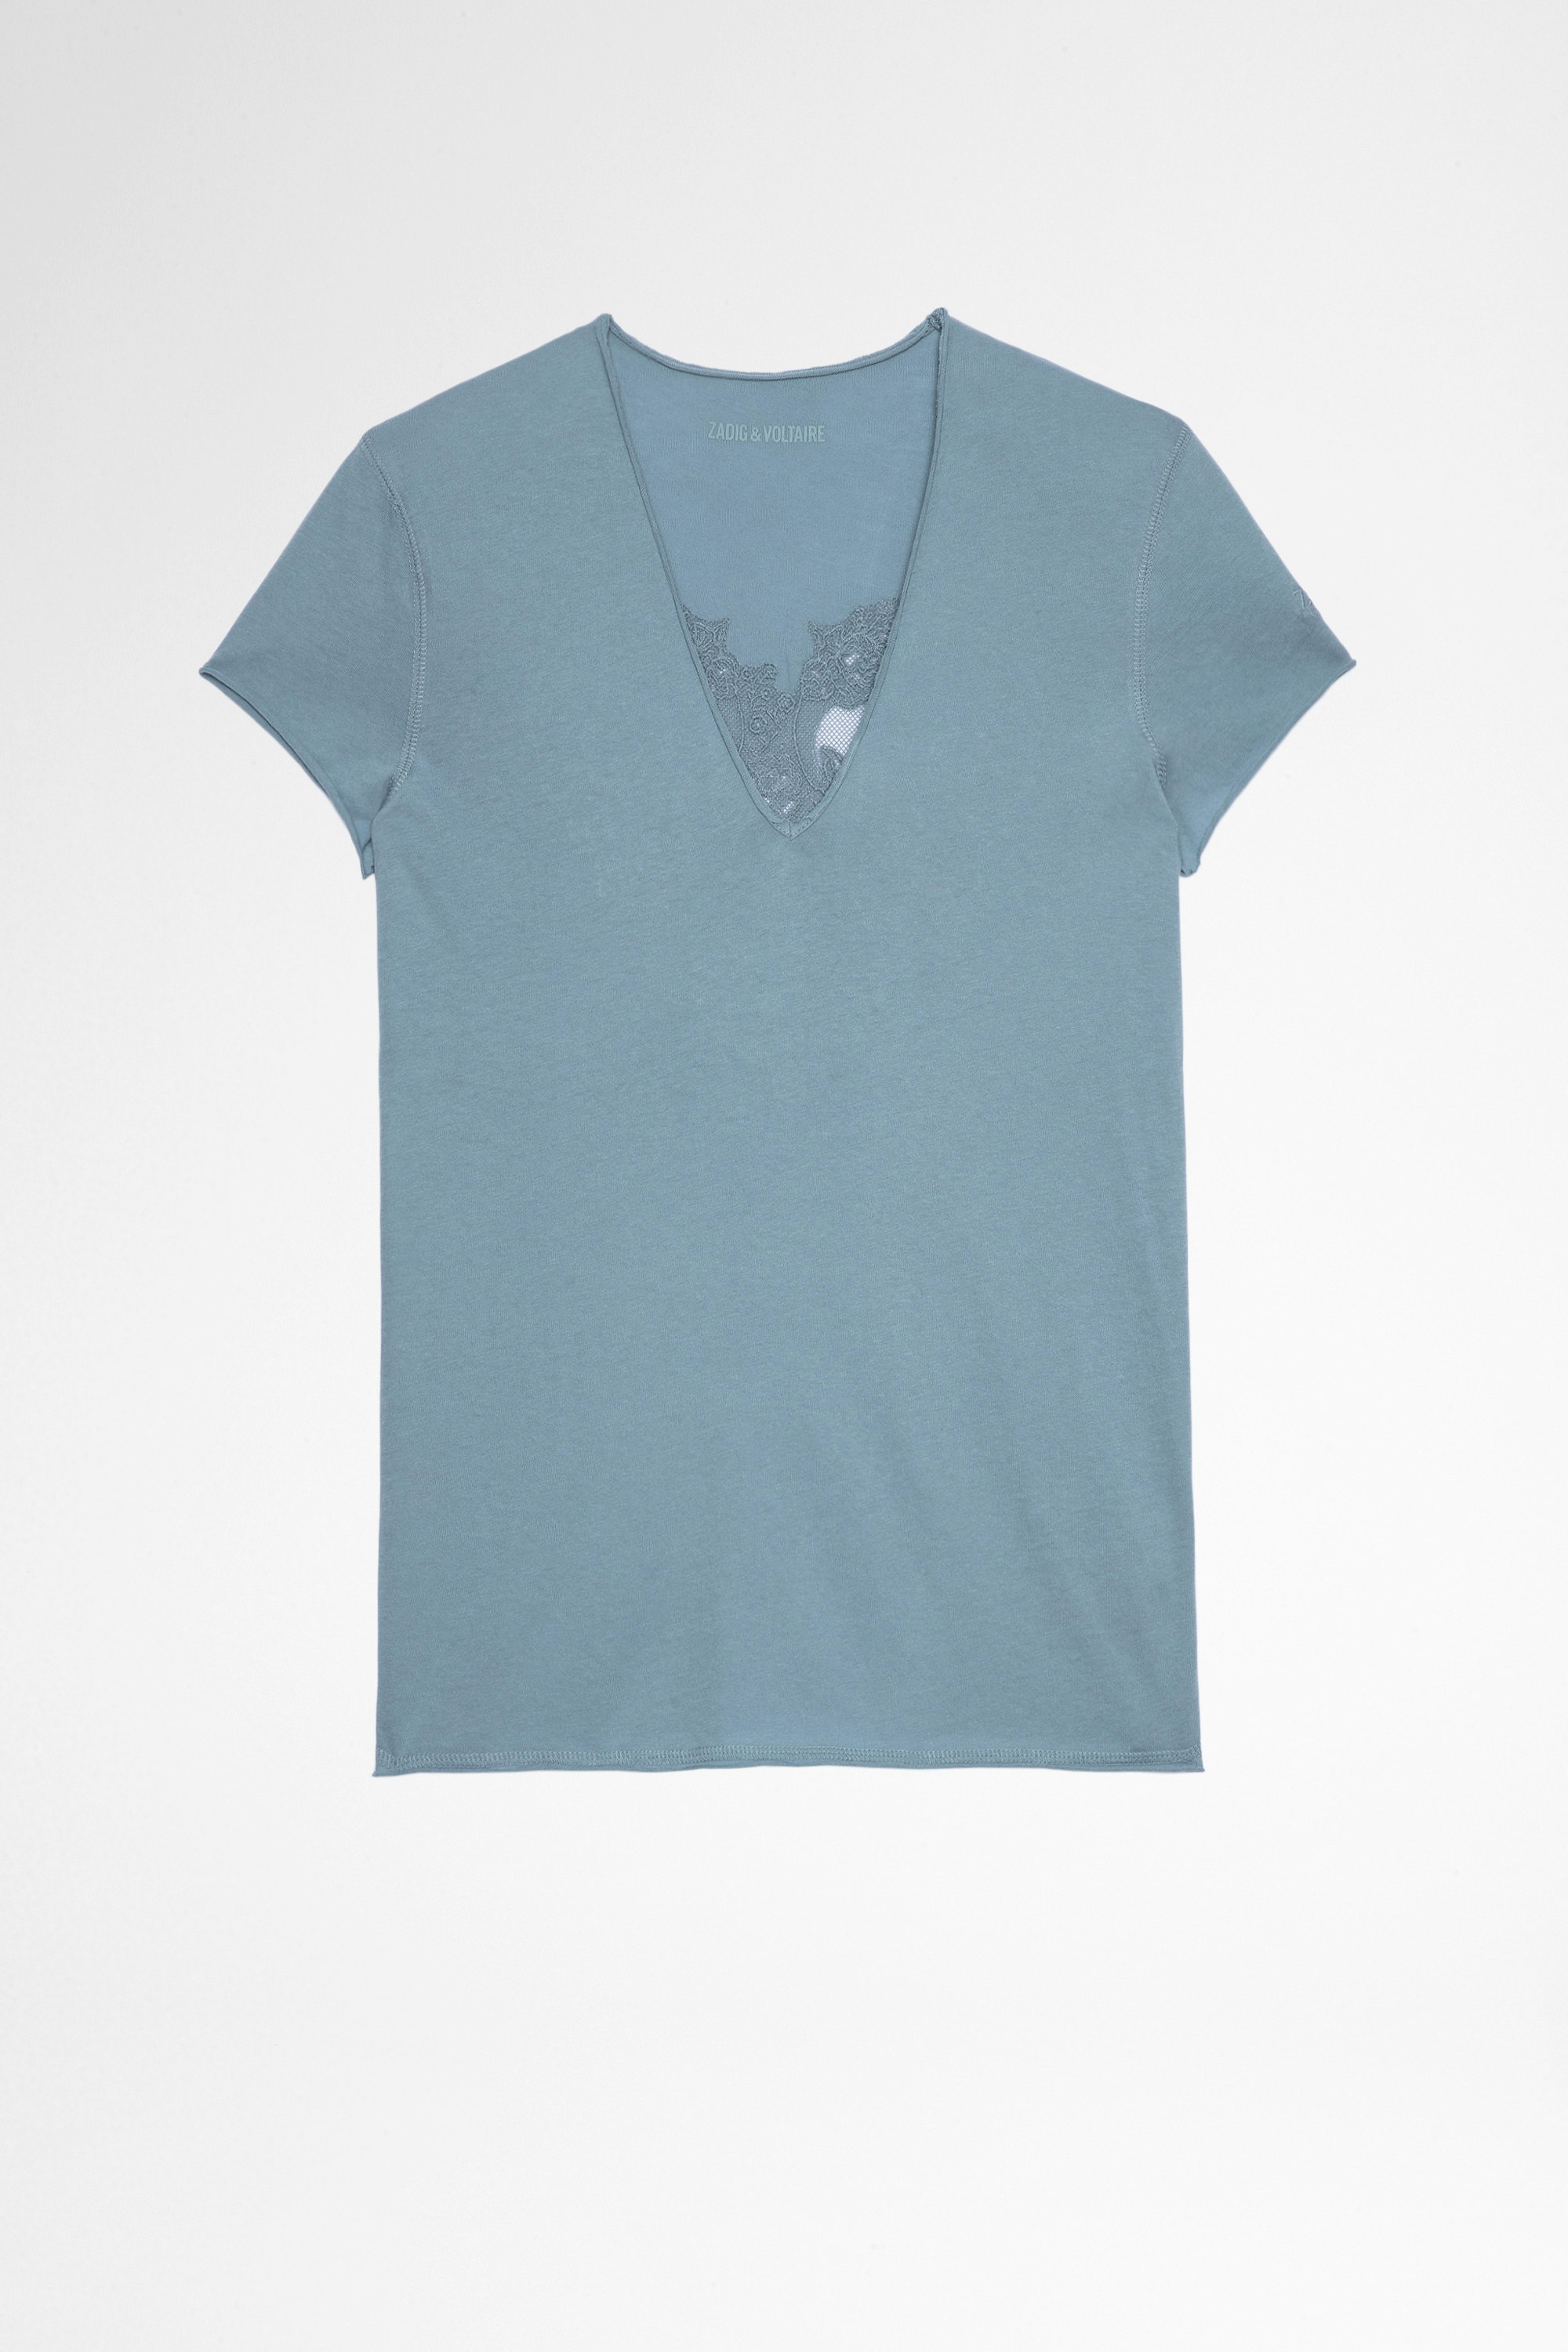 T-shirt Story Fishnet Double Heart T-shirt in cotone celeste con inserti a teschio trasparenti sul retro